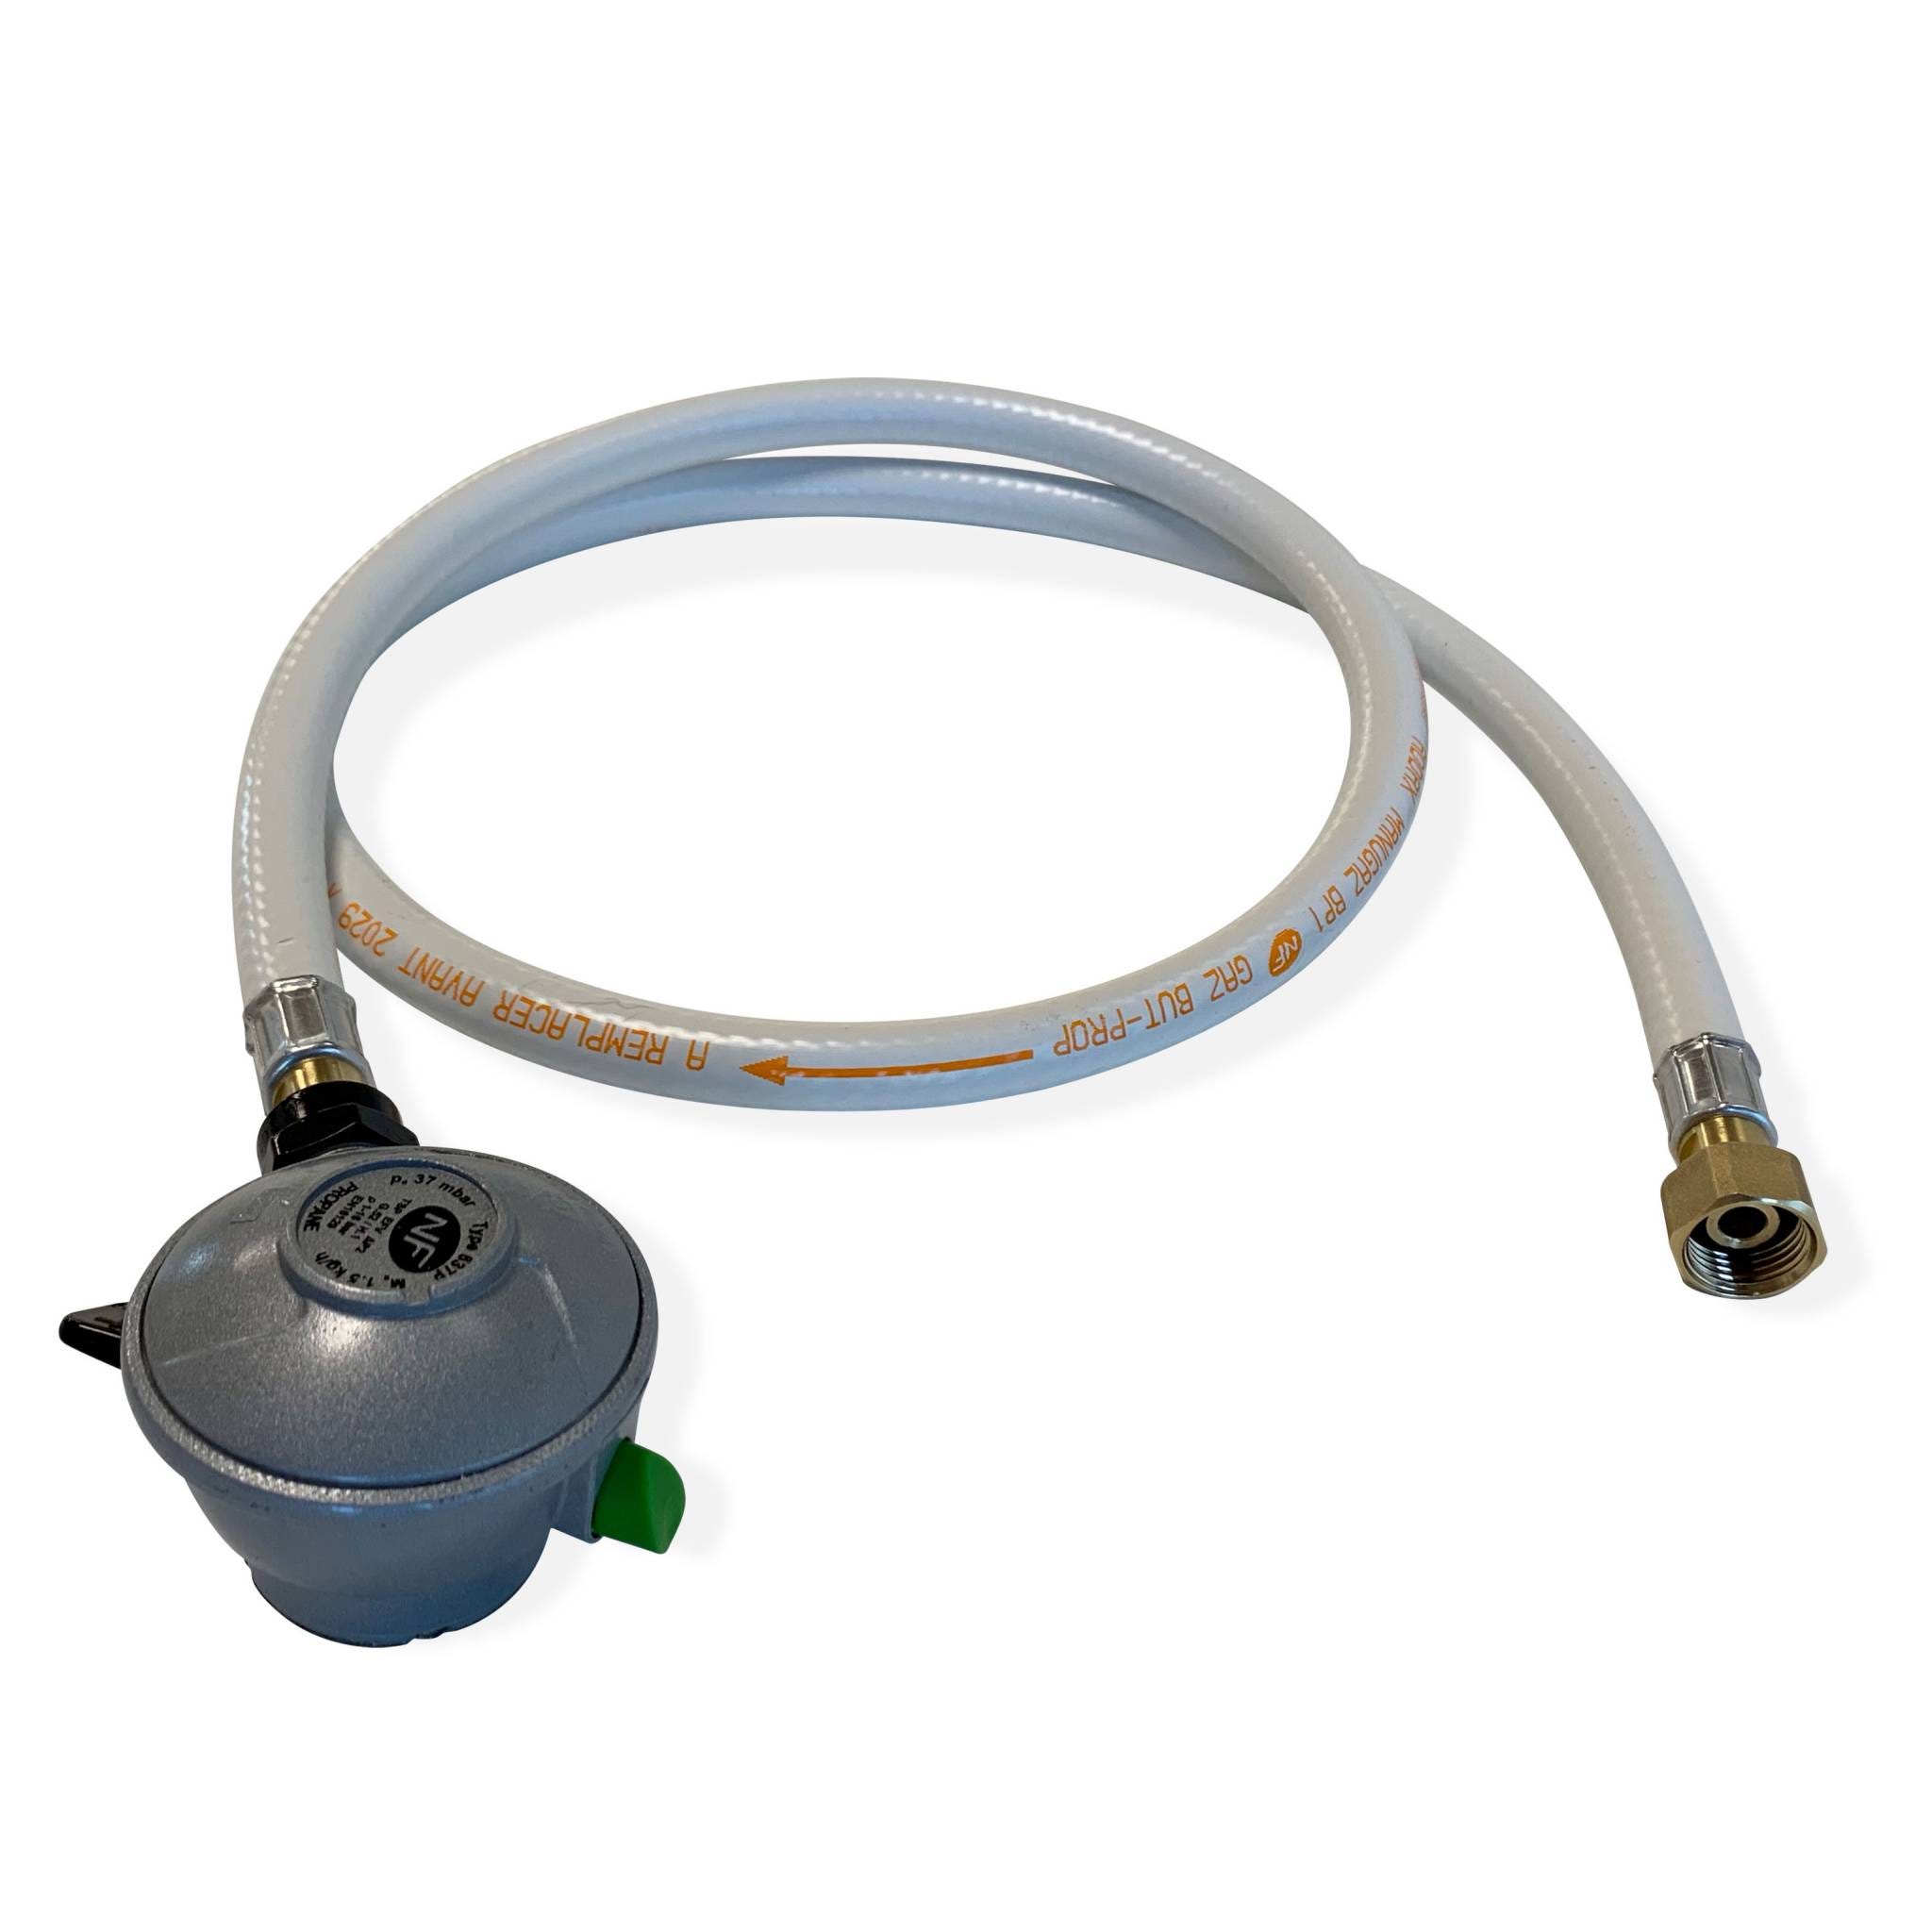 Raccord de tuyau spirale pour propane pour VR CAMCO, robuste, 24